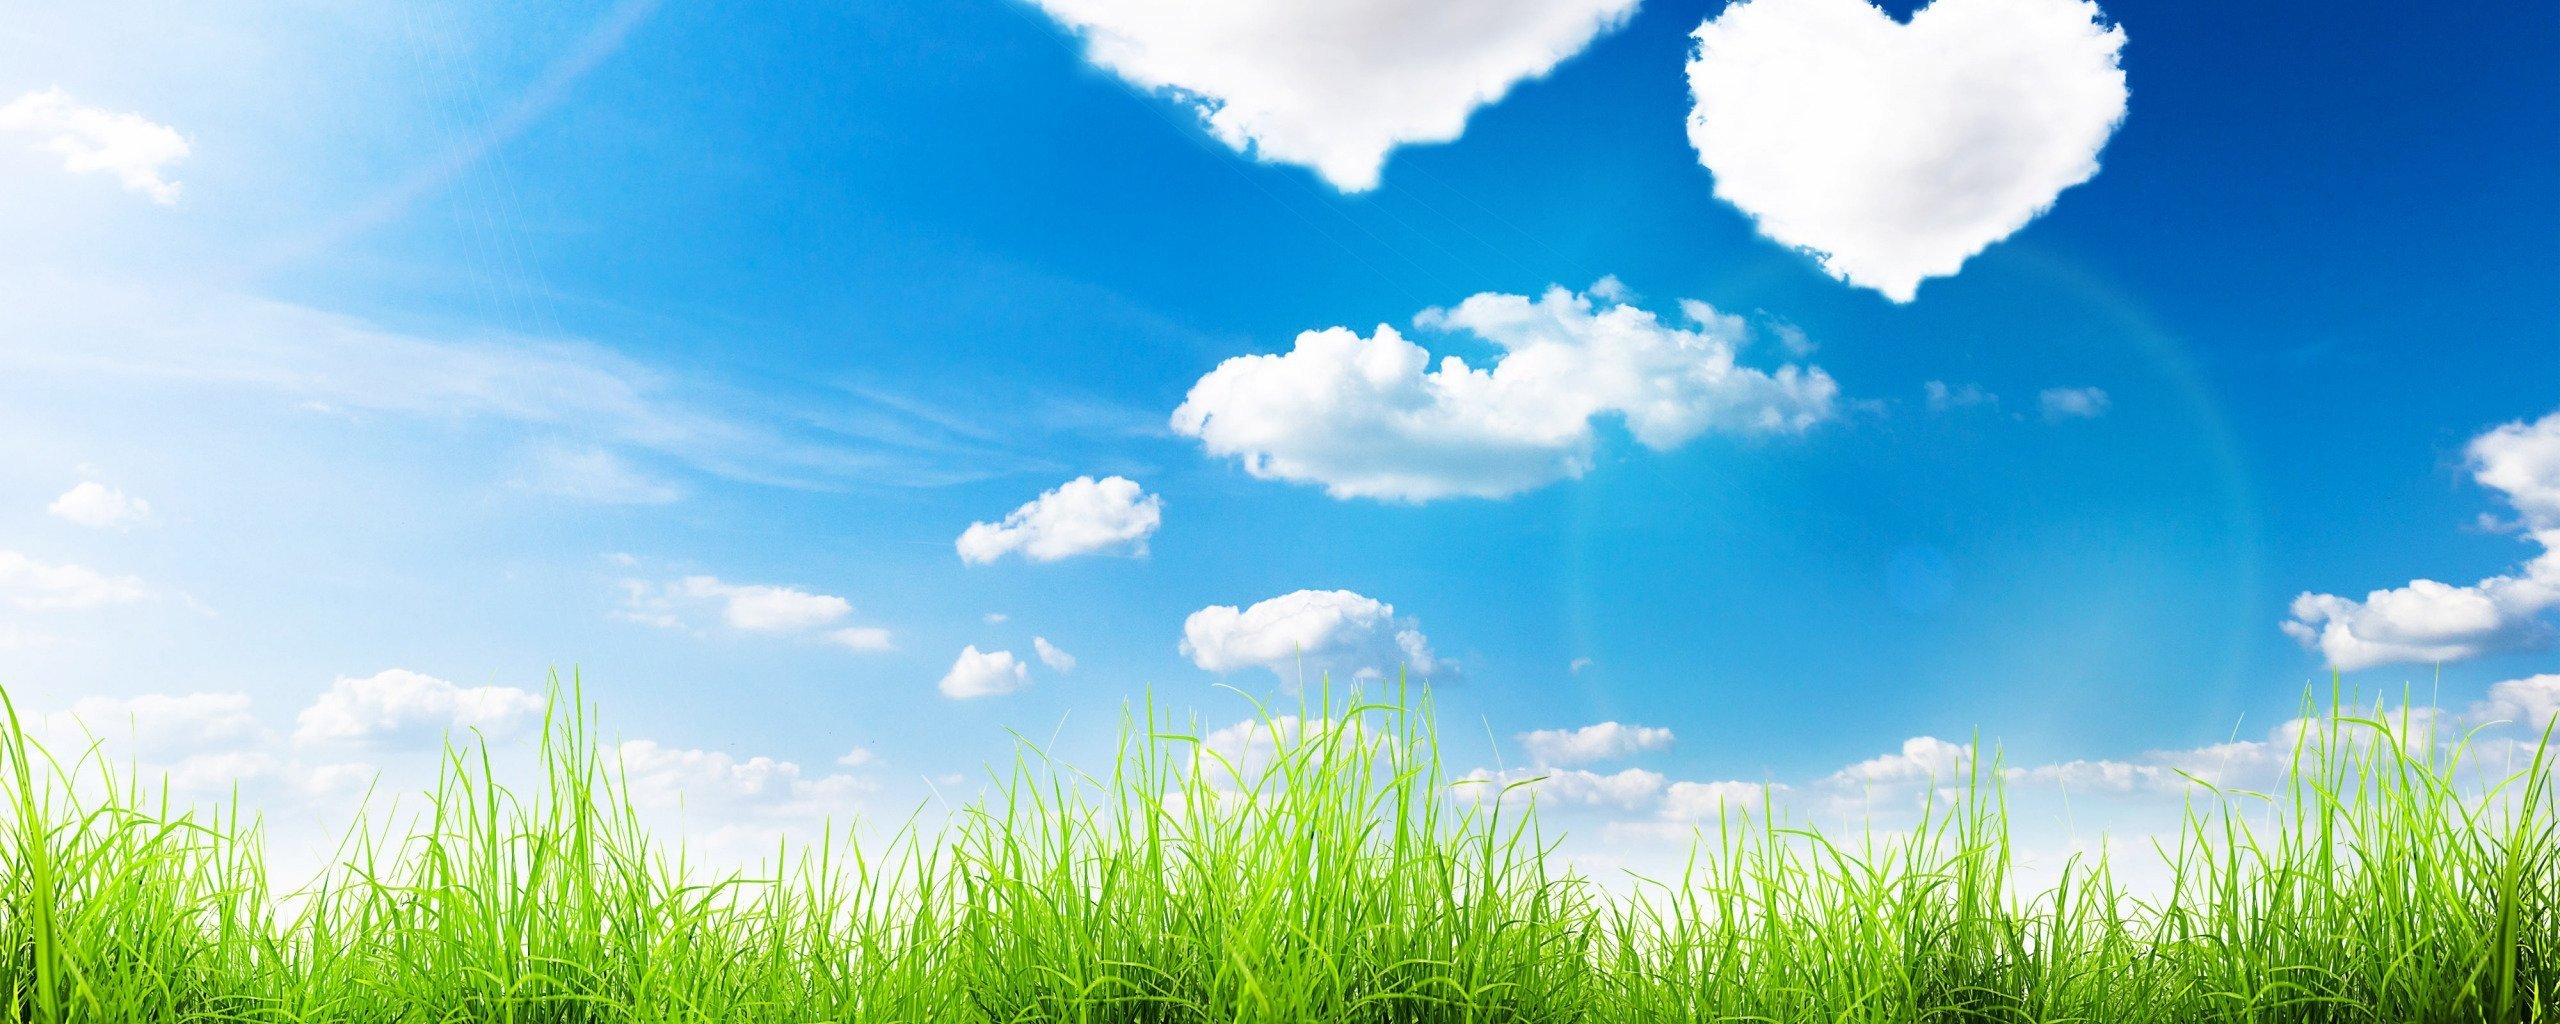 Фон трава и небо - фото и картинки: 65 штук